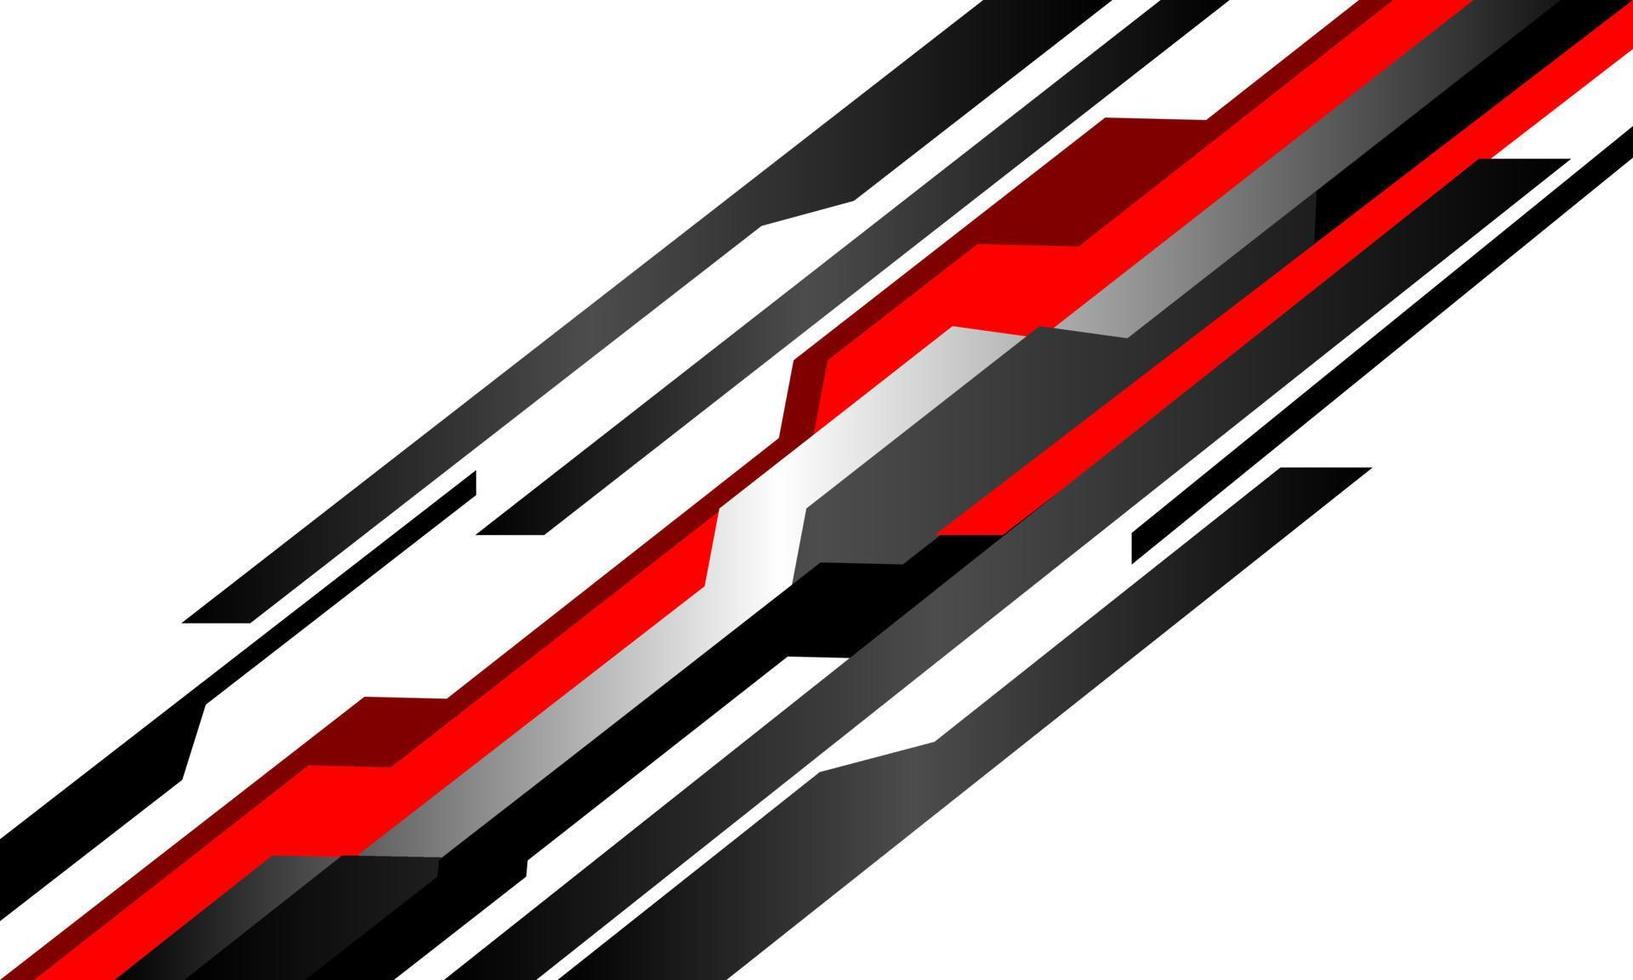 abstrait rouge noir gris métal cyber ligne géométrique cyber technologie futuriste sur illustration vectorielle moderne design blanc. vecteur